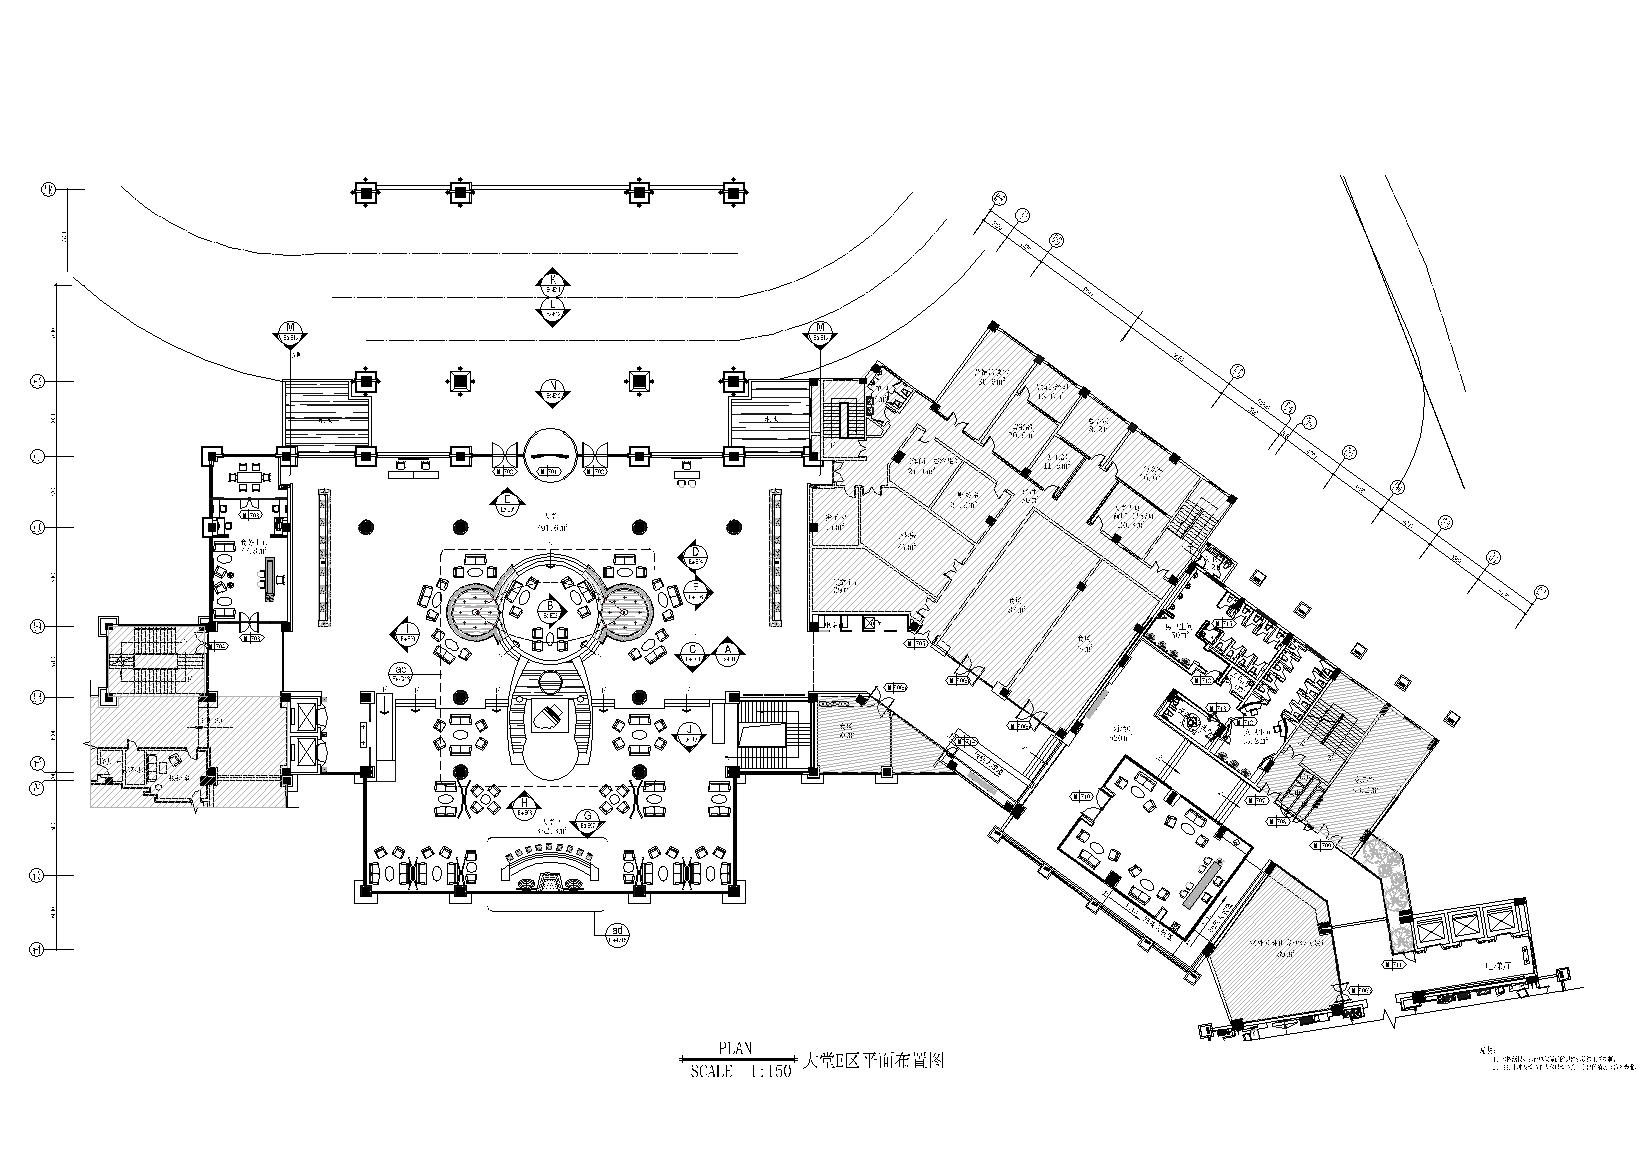 十一层豪华套房平面布置图 1:75-五星级酒店设计施工-图片